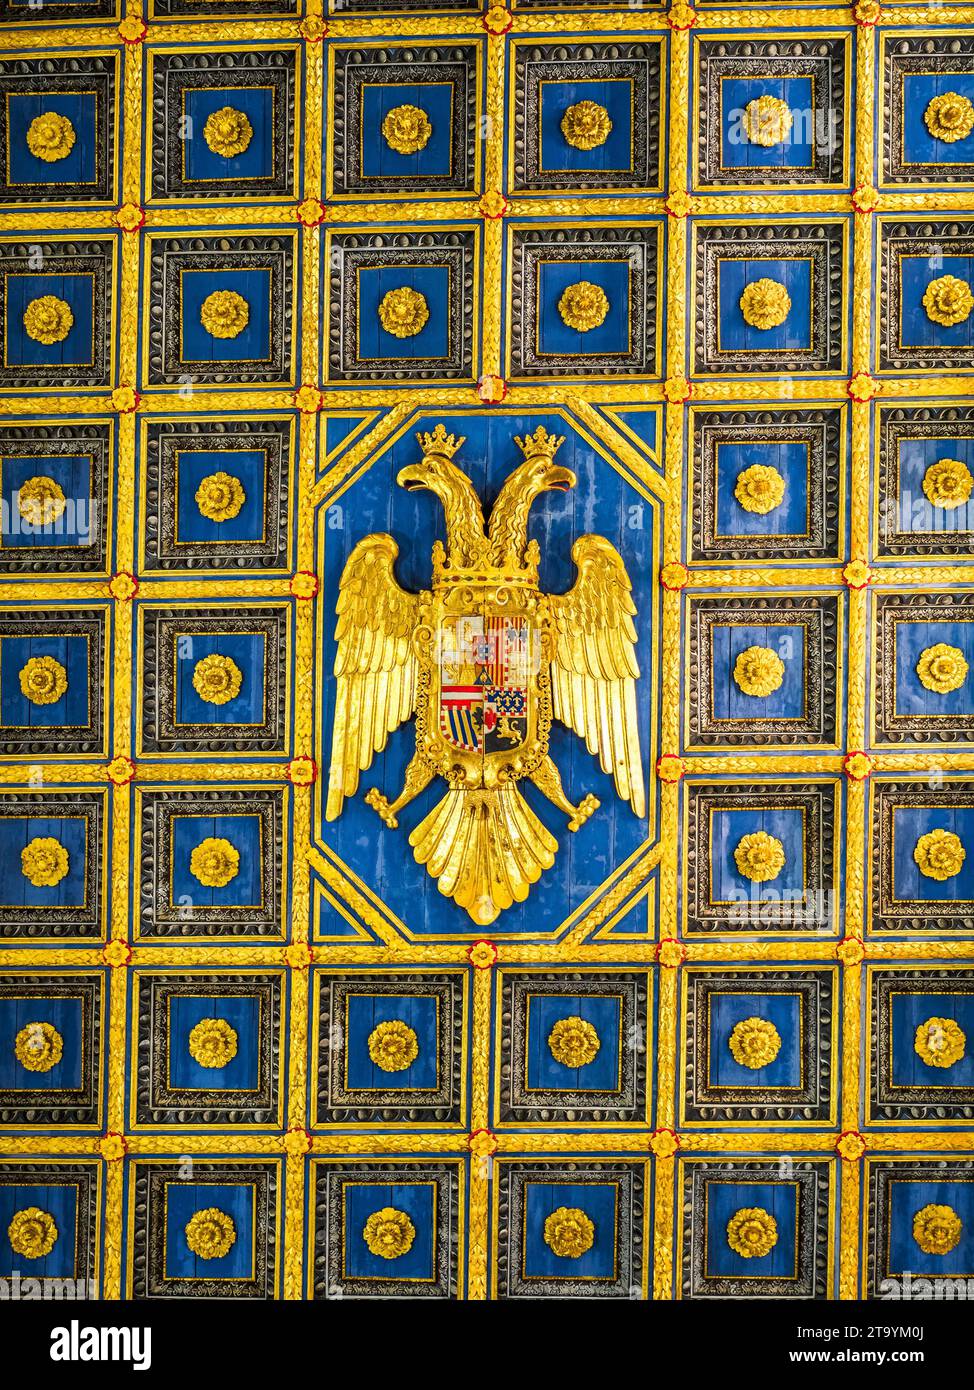 Techo artesonado dorado (siglo XVII) con un águila de doble cabeza en el centro, el escudo de armas de los Habsburgo, en la Catedral de Agrigento (Cattedrale di San Gerlando) - Sicilia, Italia Foto de stock